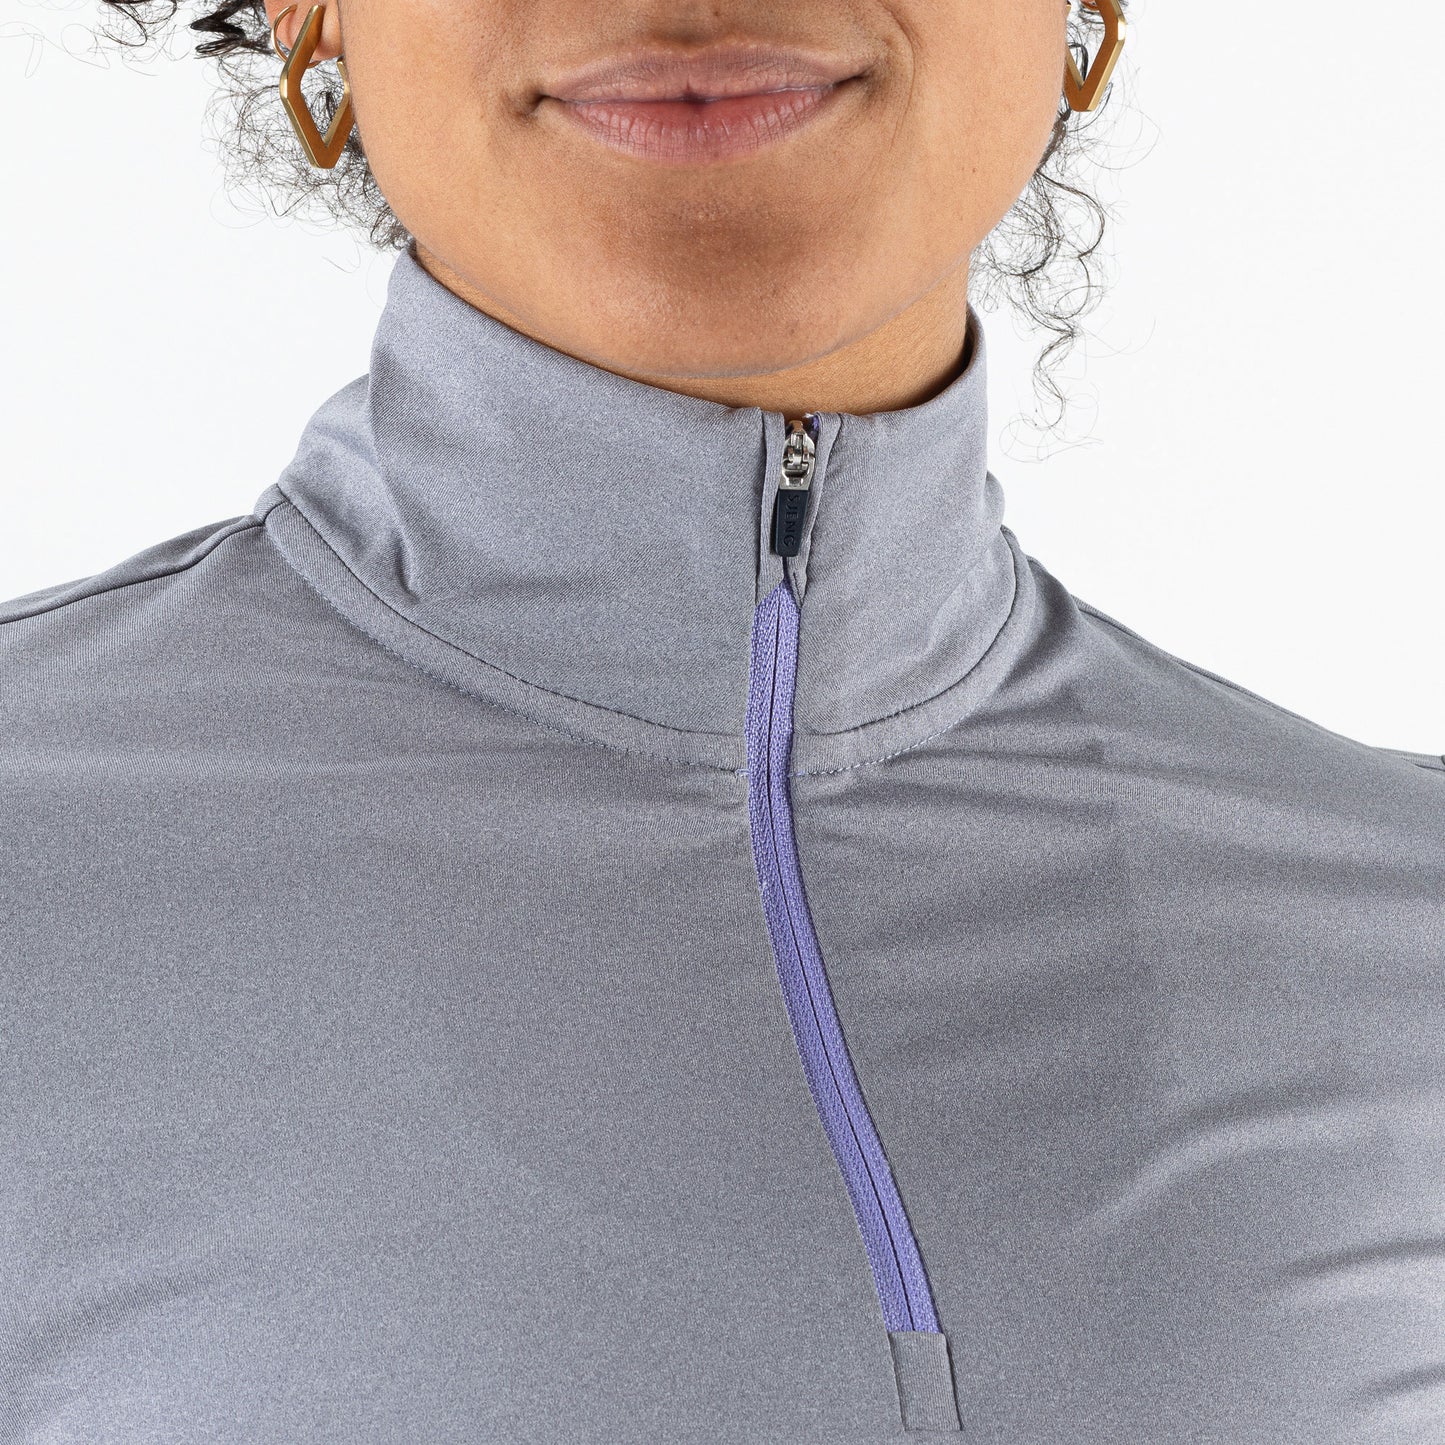 Sjeng Sports Marcela Women's Long-Sleeve Tennis Top Grey (3)